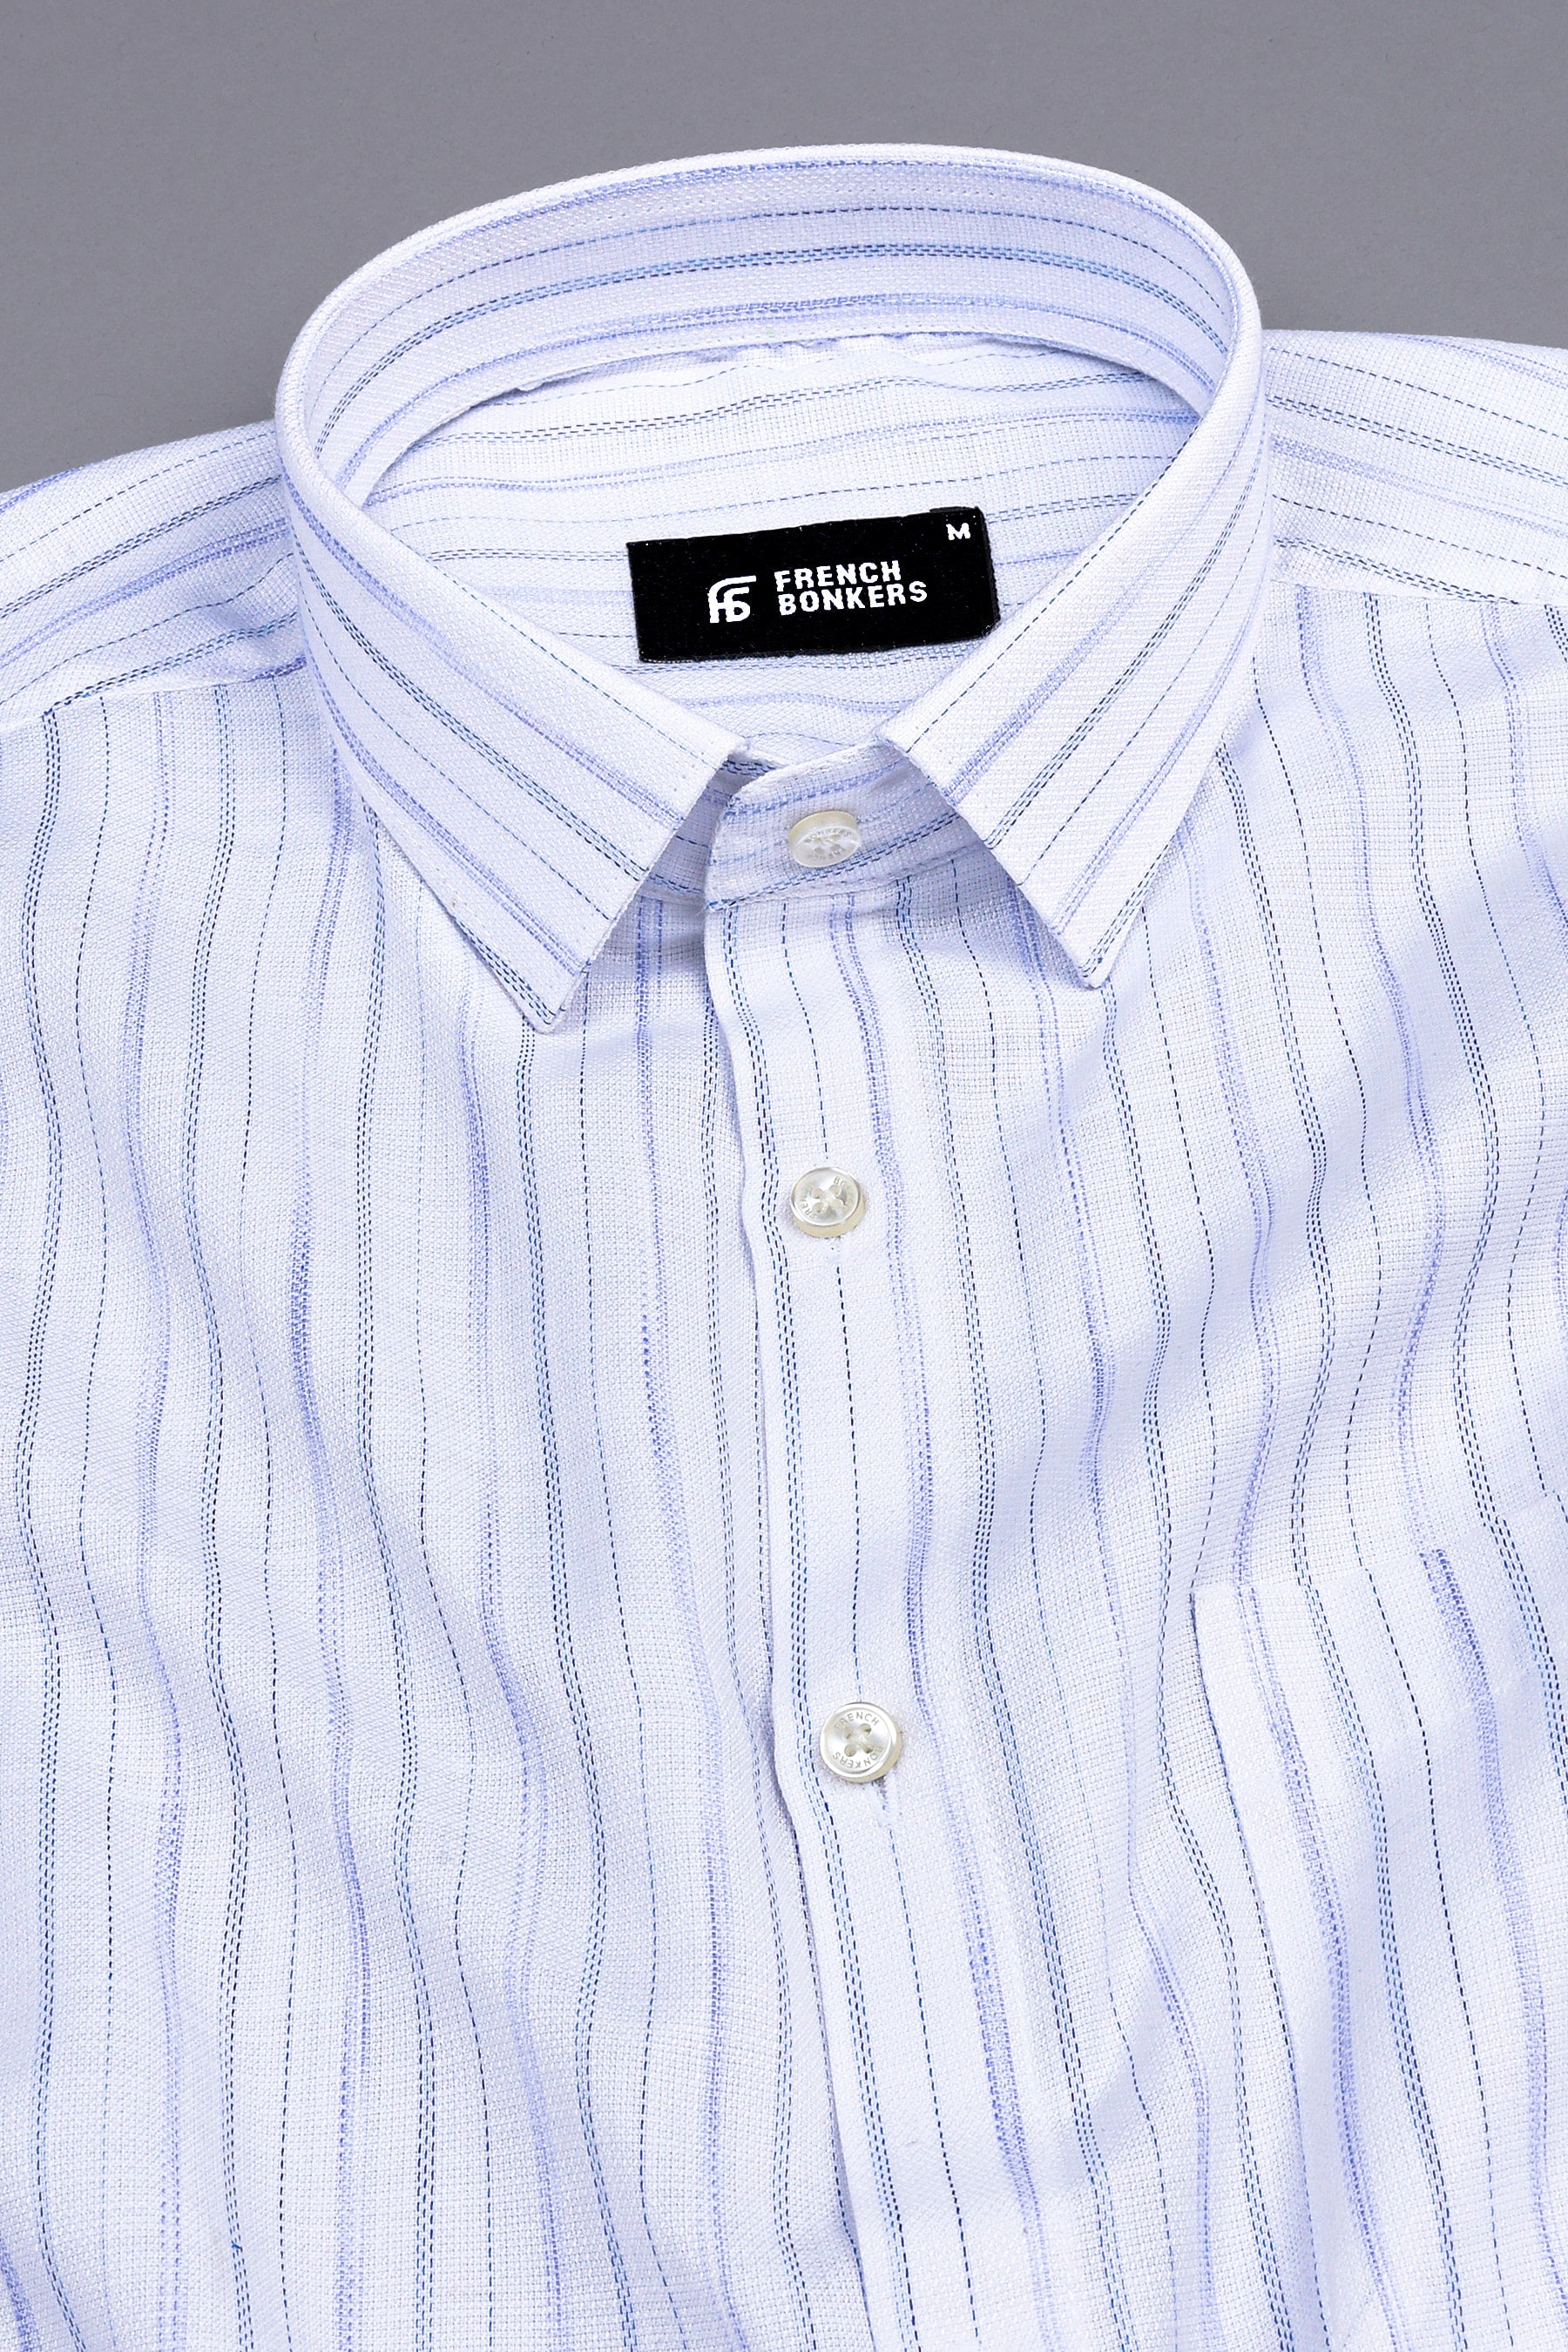 Rich white with royal blue lines arglye stripe shirt